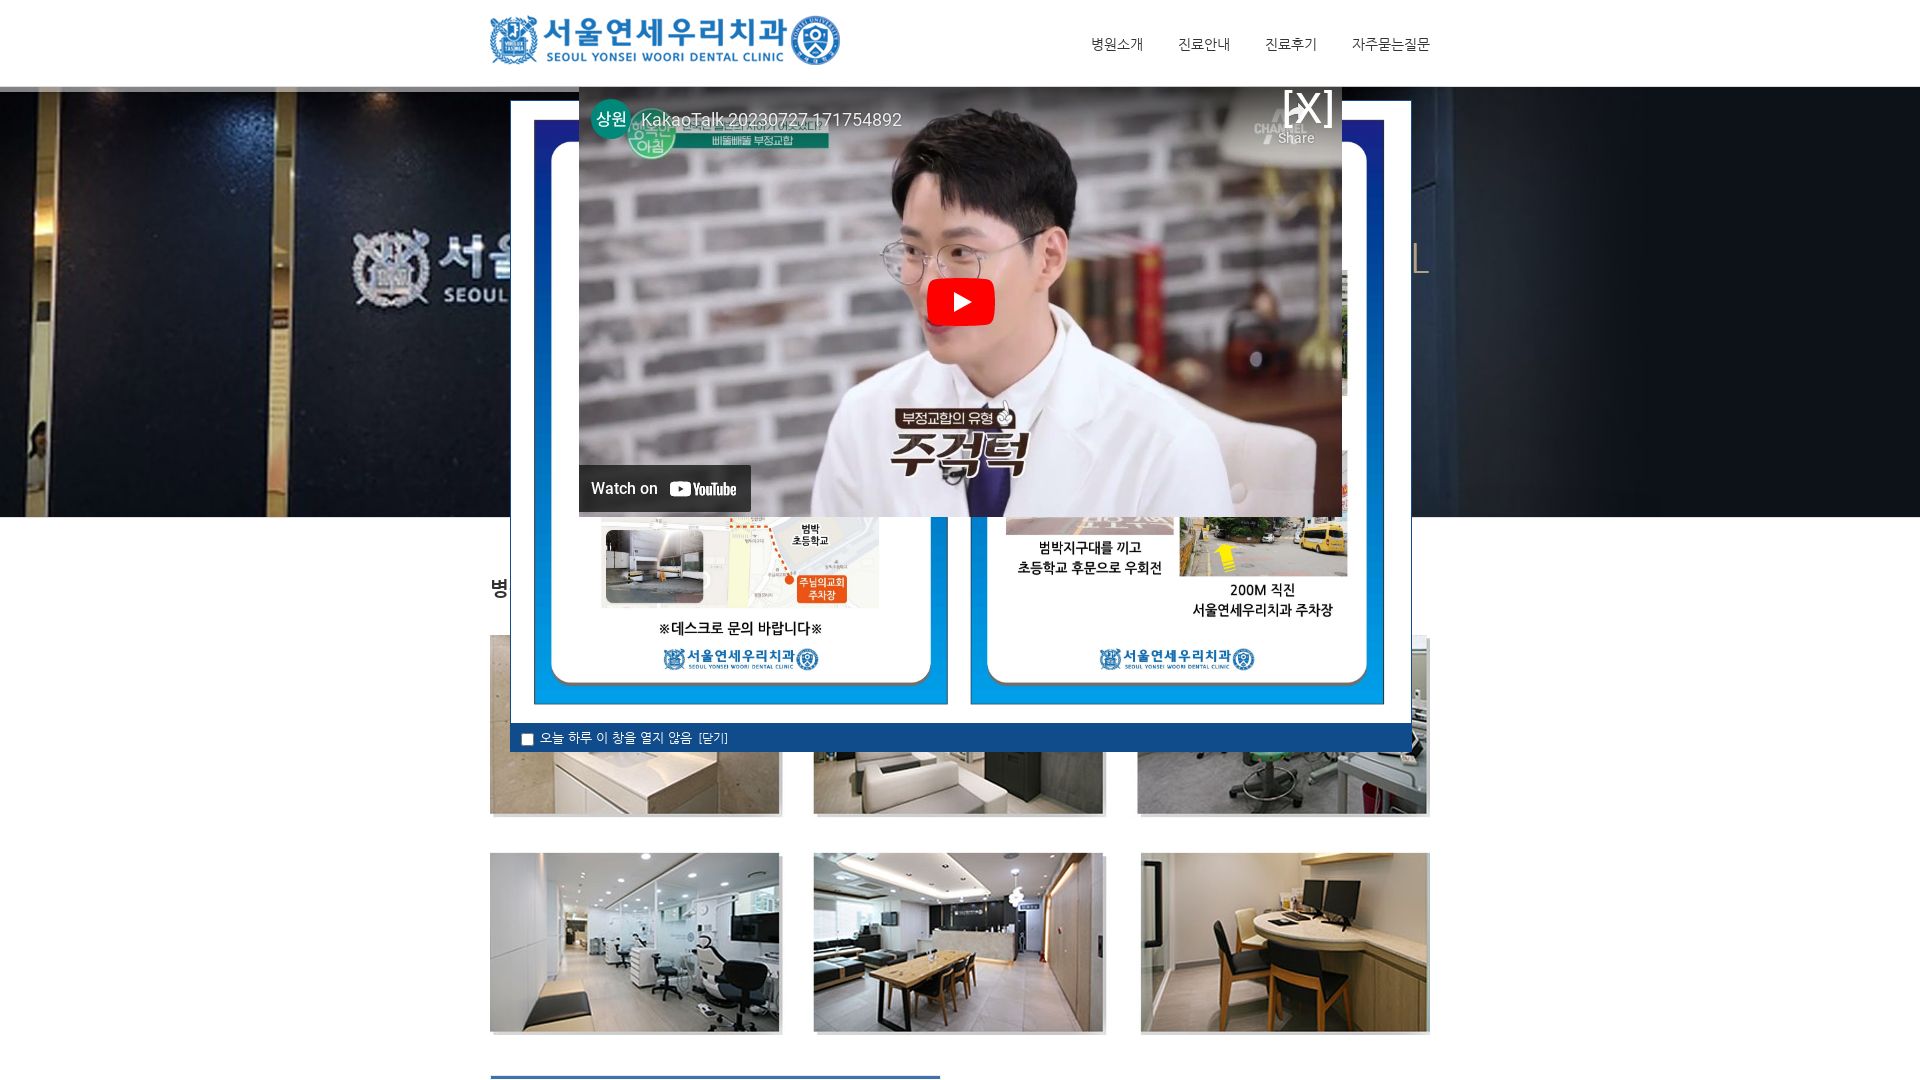 Website status yonseiwoori.kr is   ONLINE